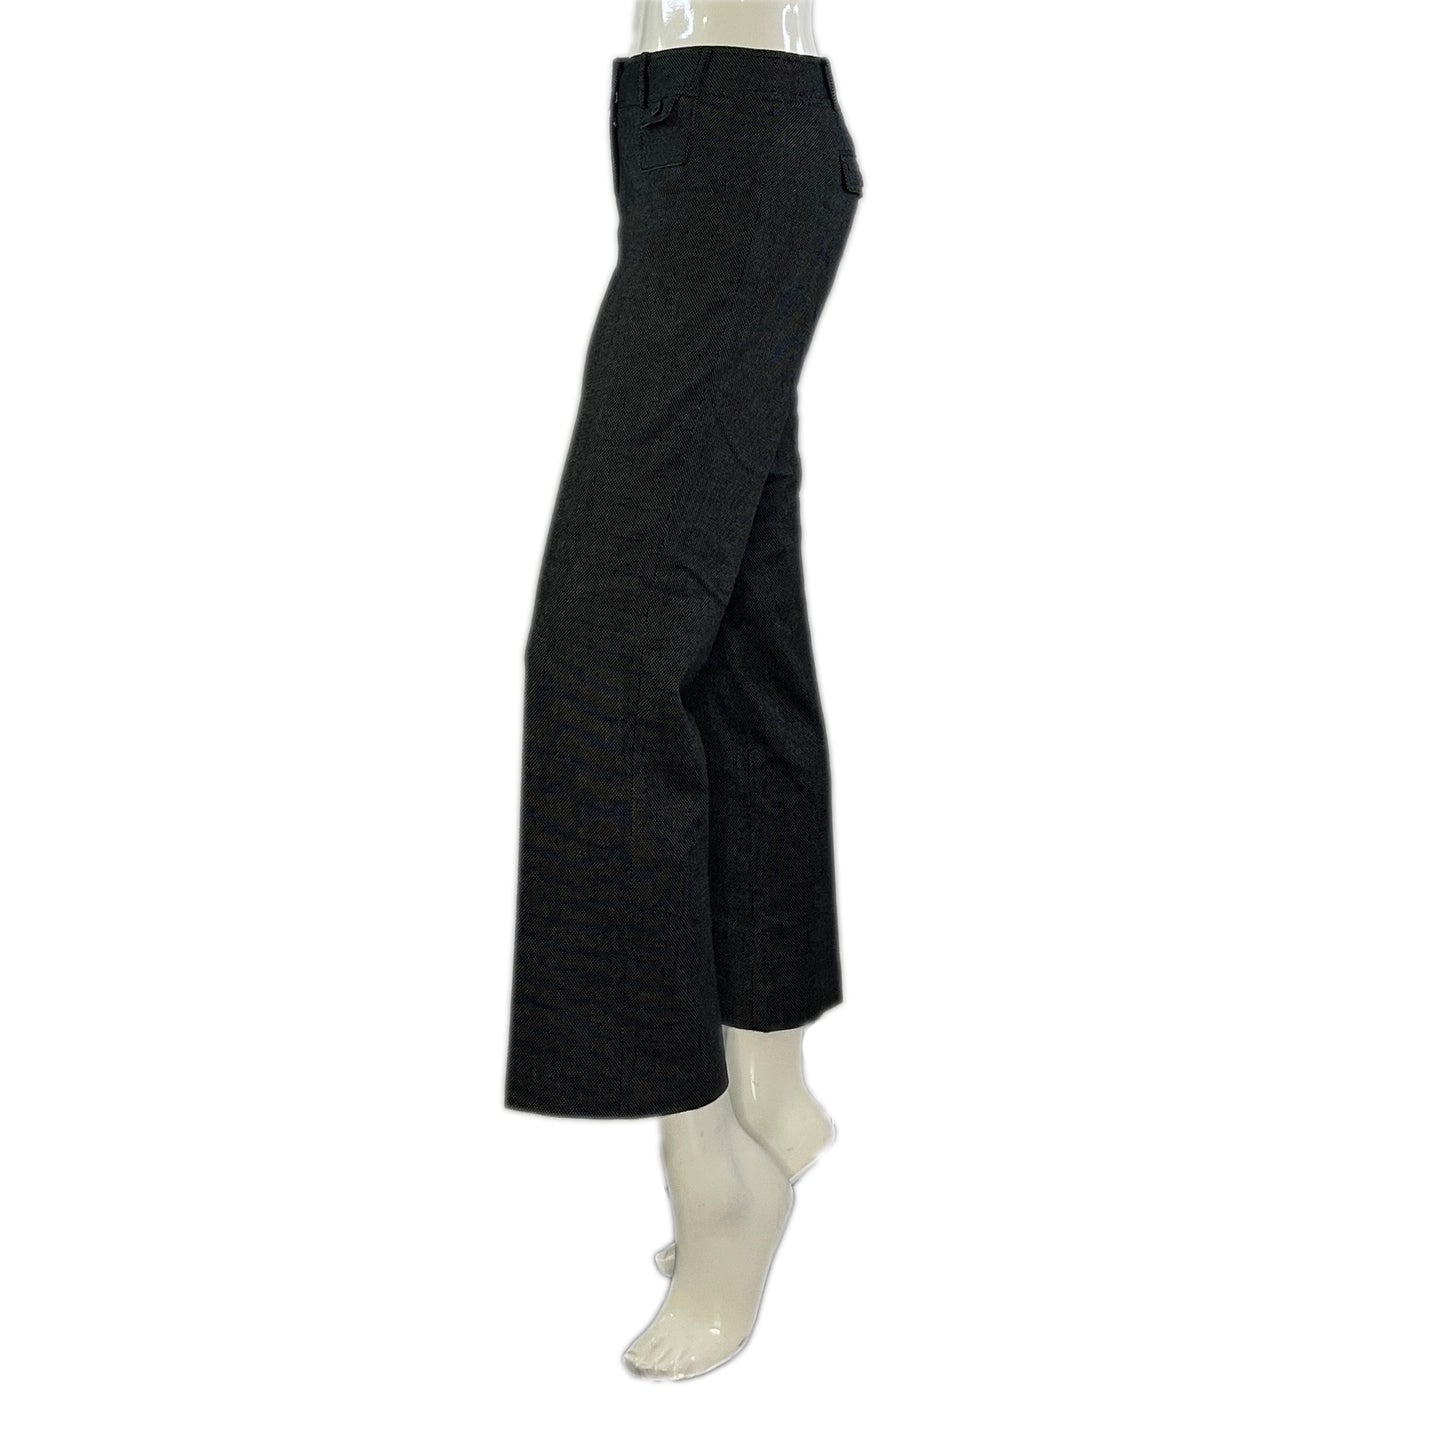 Ann Taylor Dress Pants Knit Black, White Size 4 SKU 000372-2